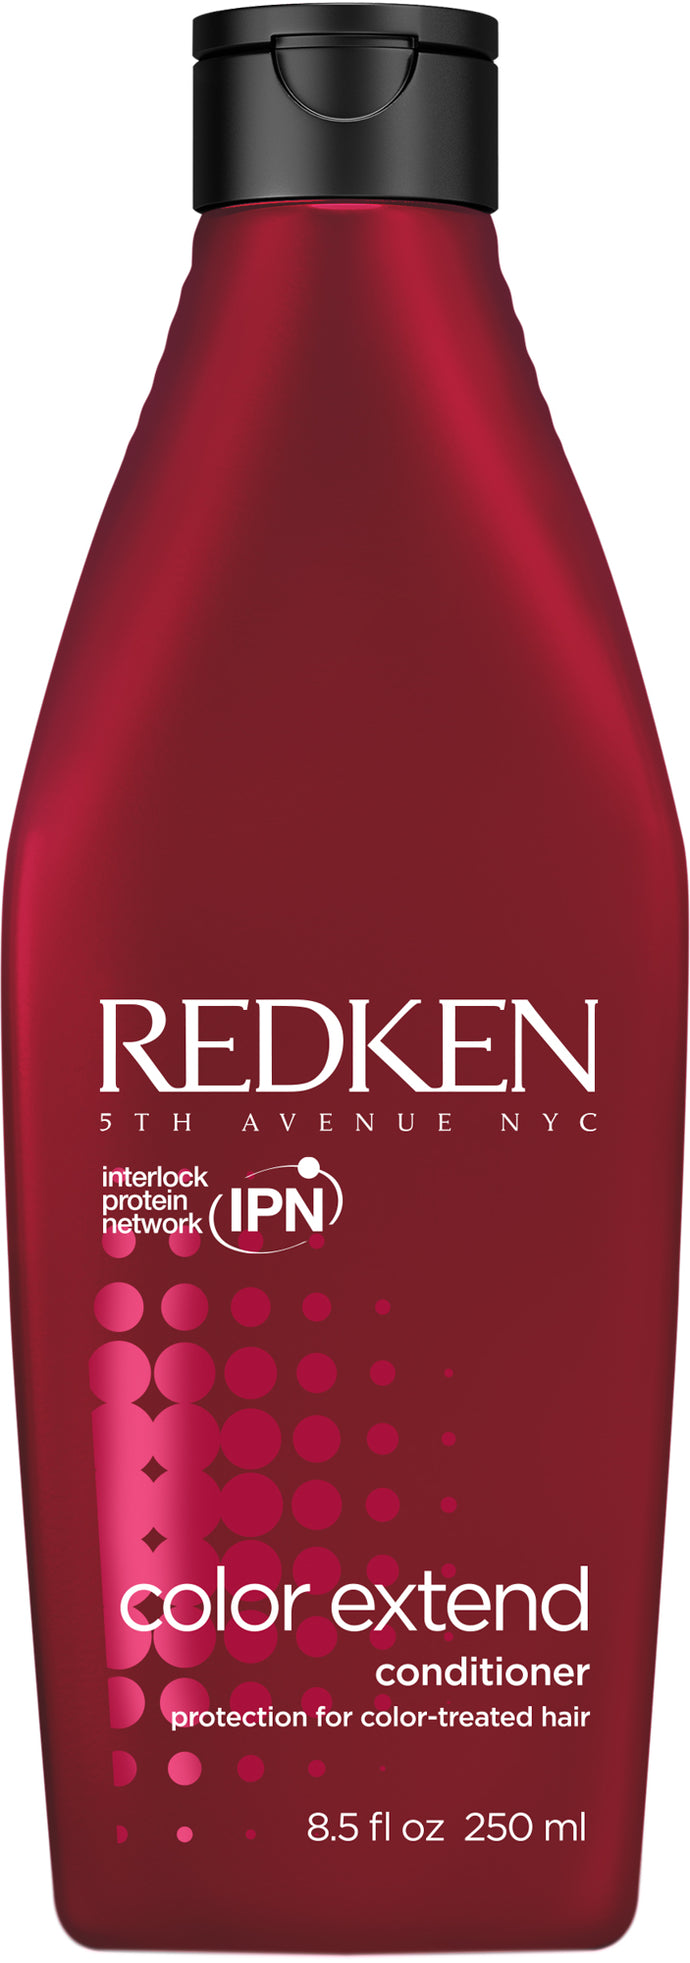 Redken Conditioner - Colour Extend